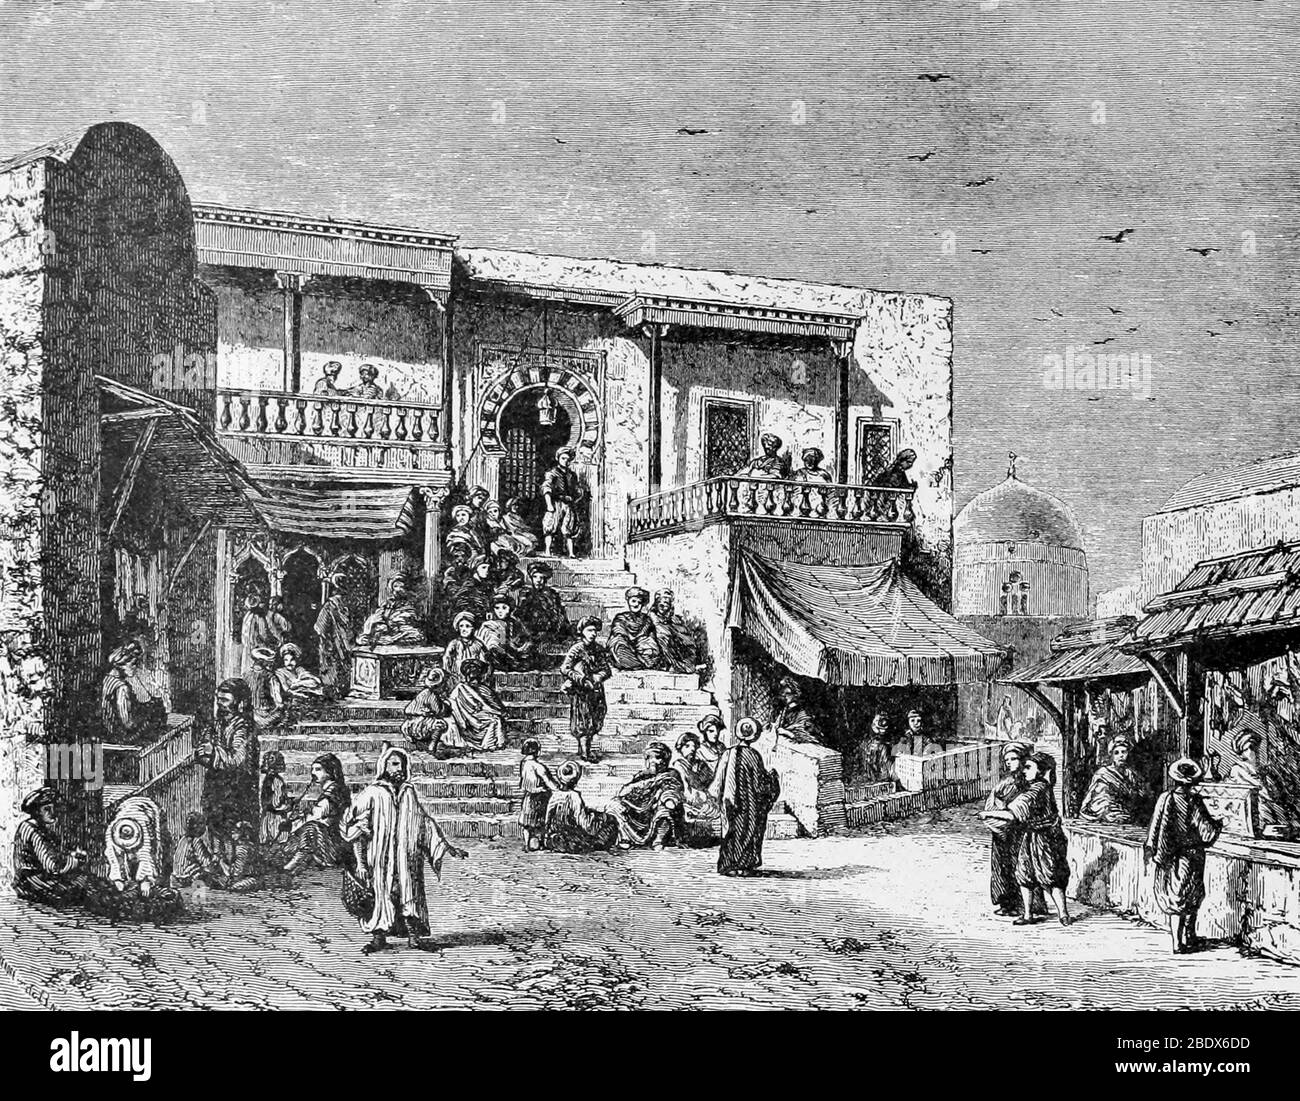 Afrique du Nord, Sidi Bou Said Cafe, XIXe siècle Banque D'Images